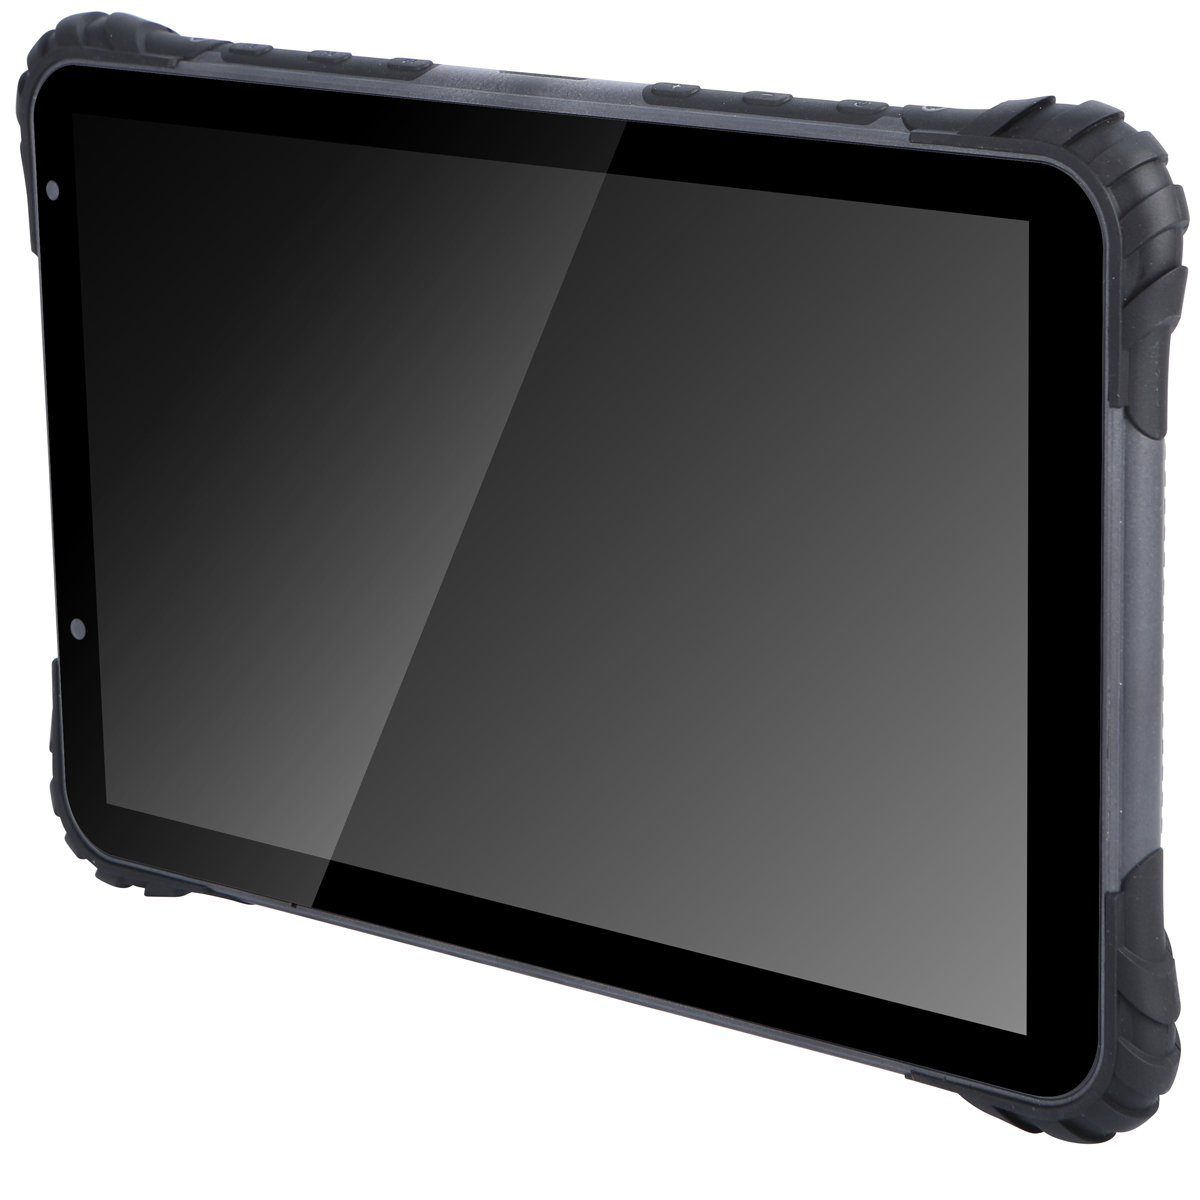 Paket: GNSS-Empfänger PNR21 mit Tablet und Software